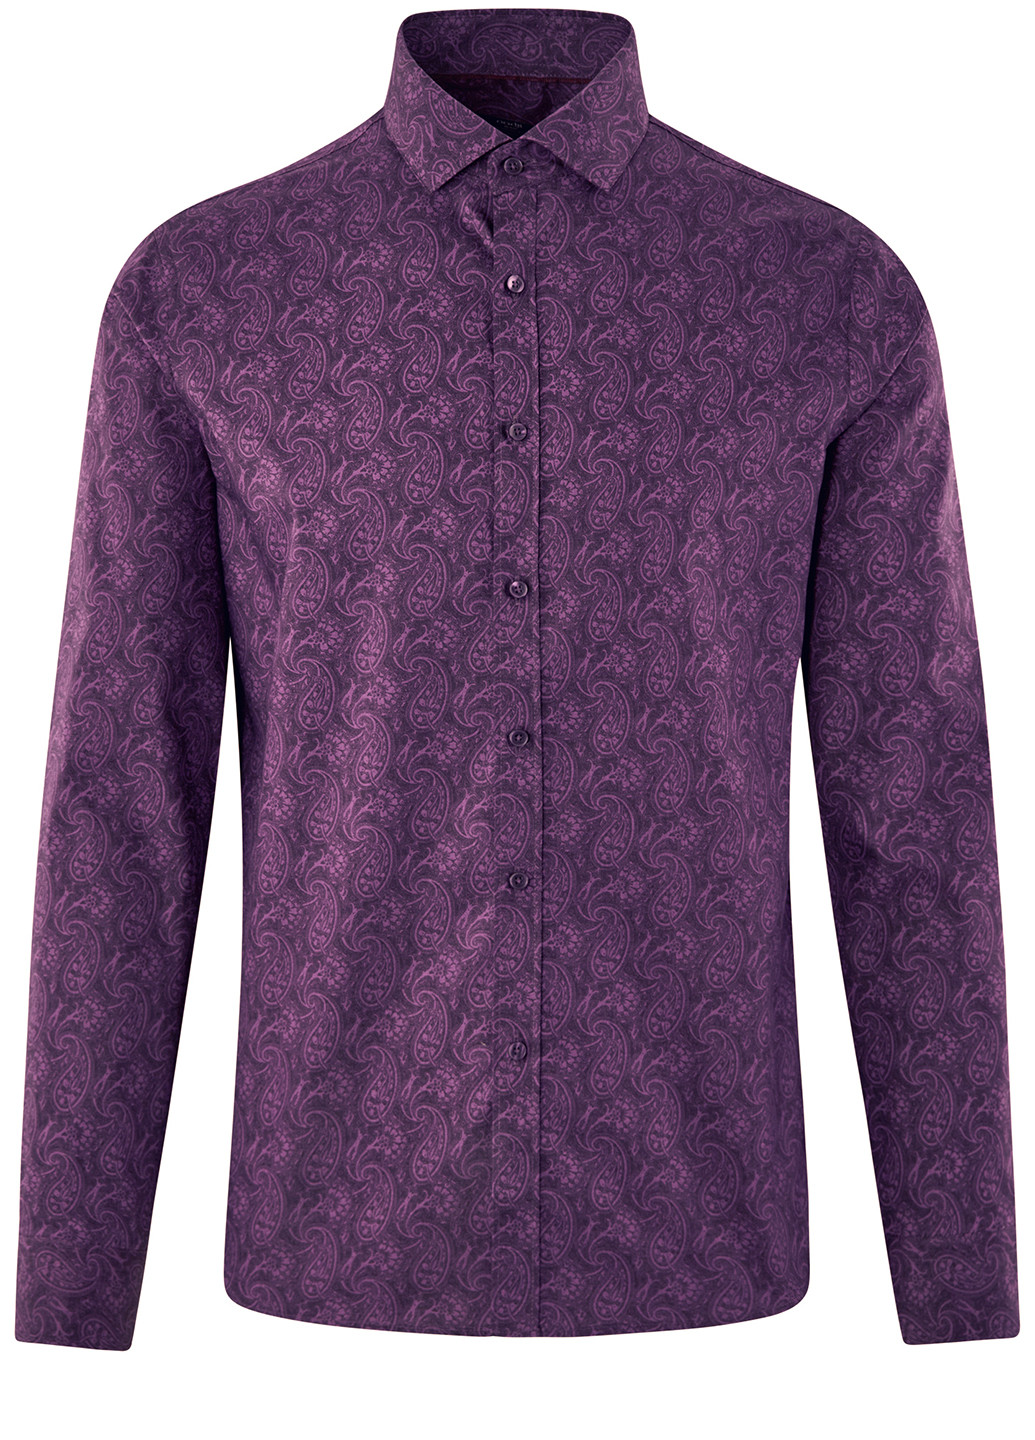 Фиолетовая кэжуал рубашка с рисунком Oodji с длинным рукавом